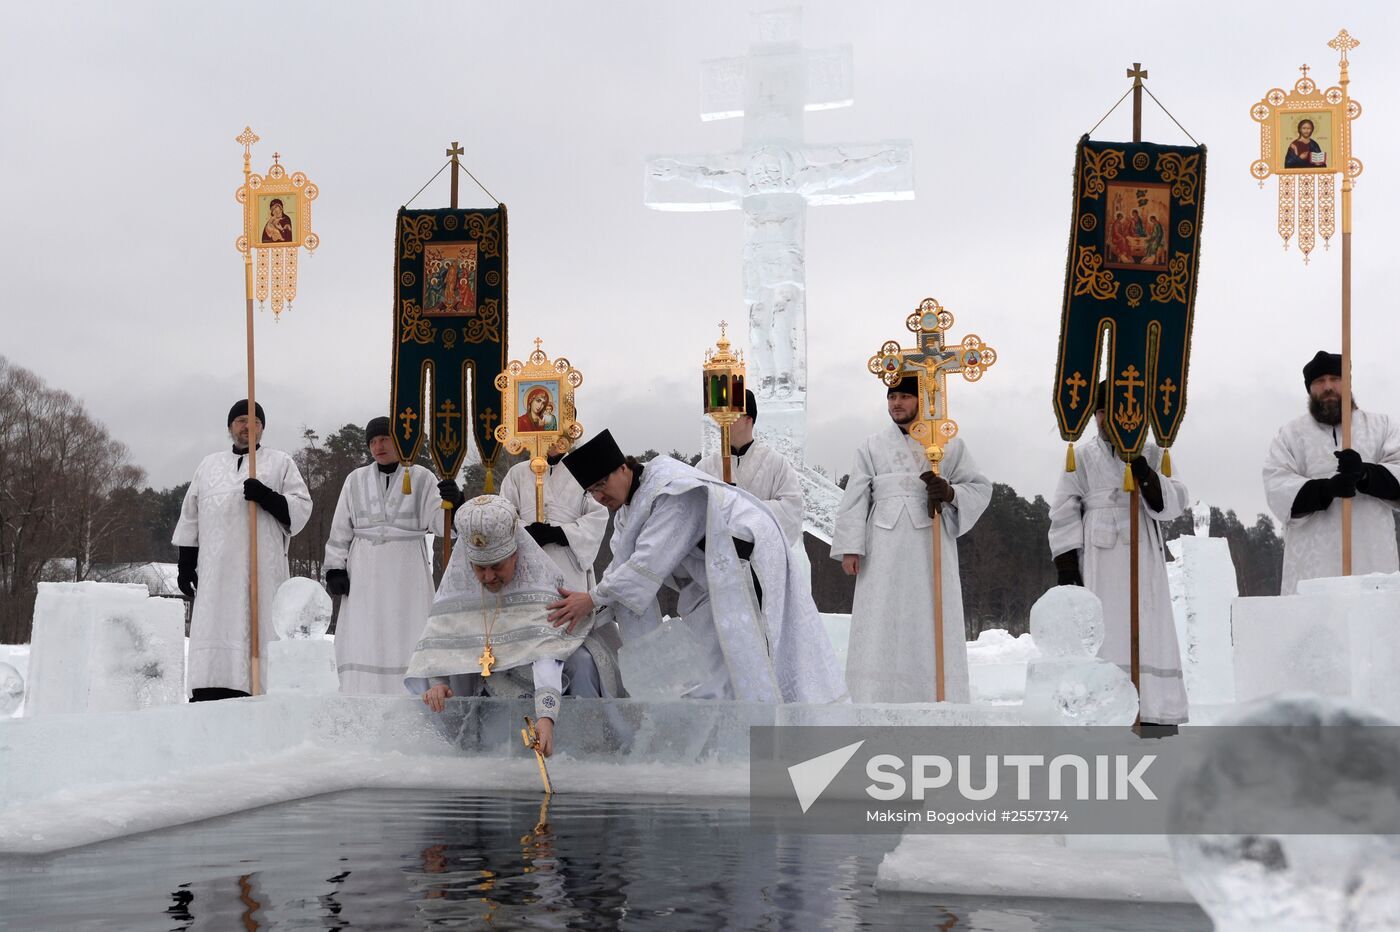 Epiphany celebrations in Russian regions